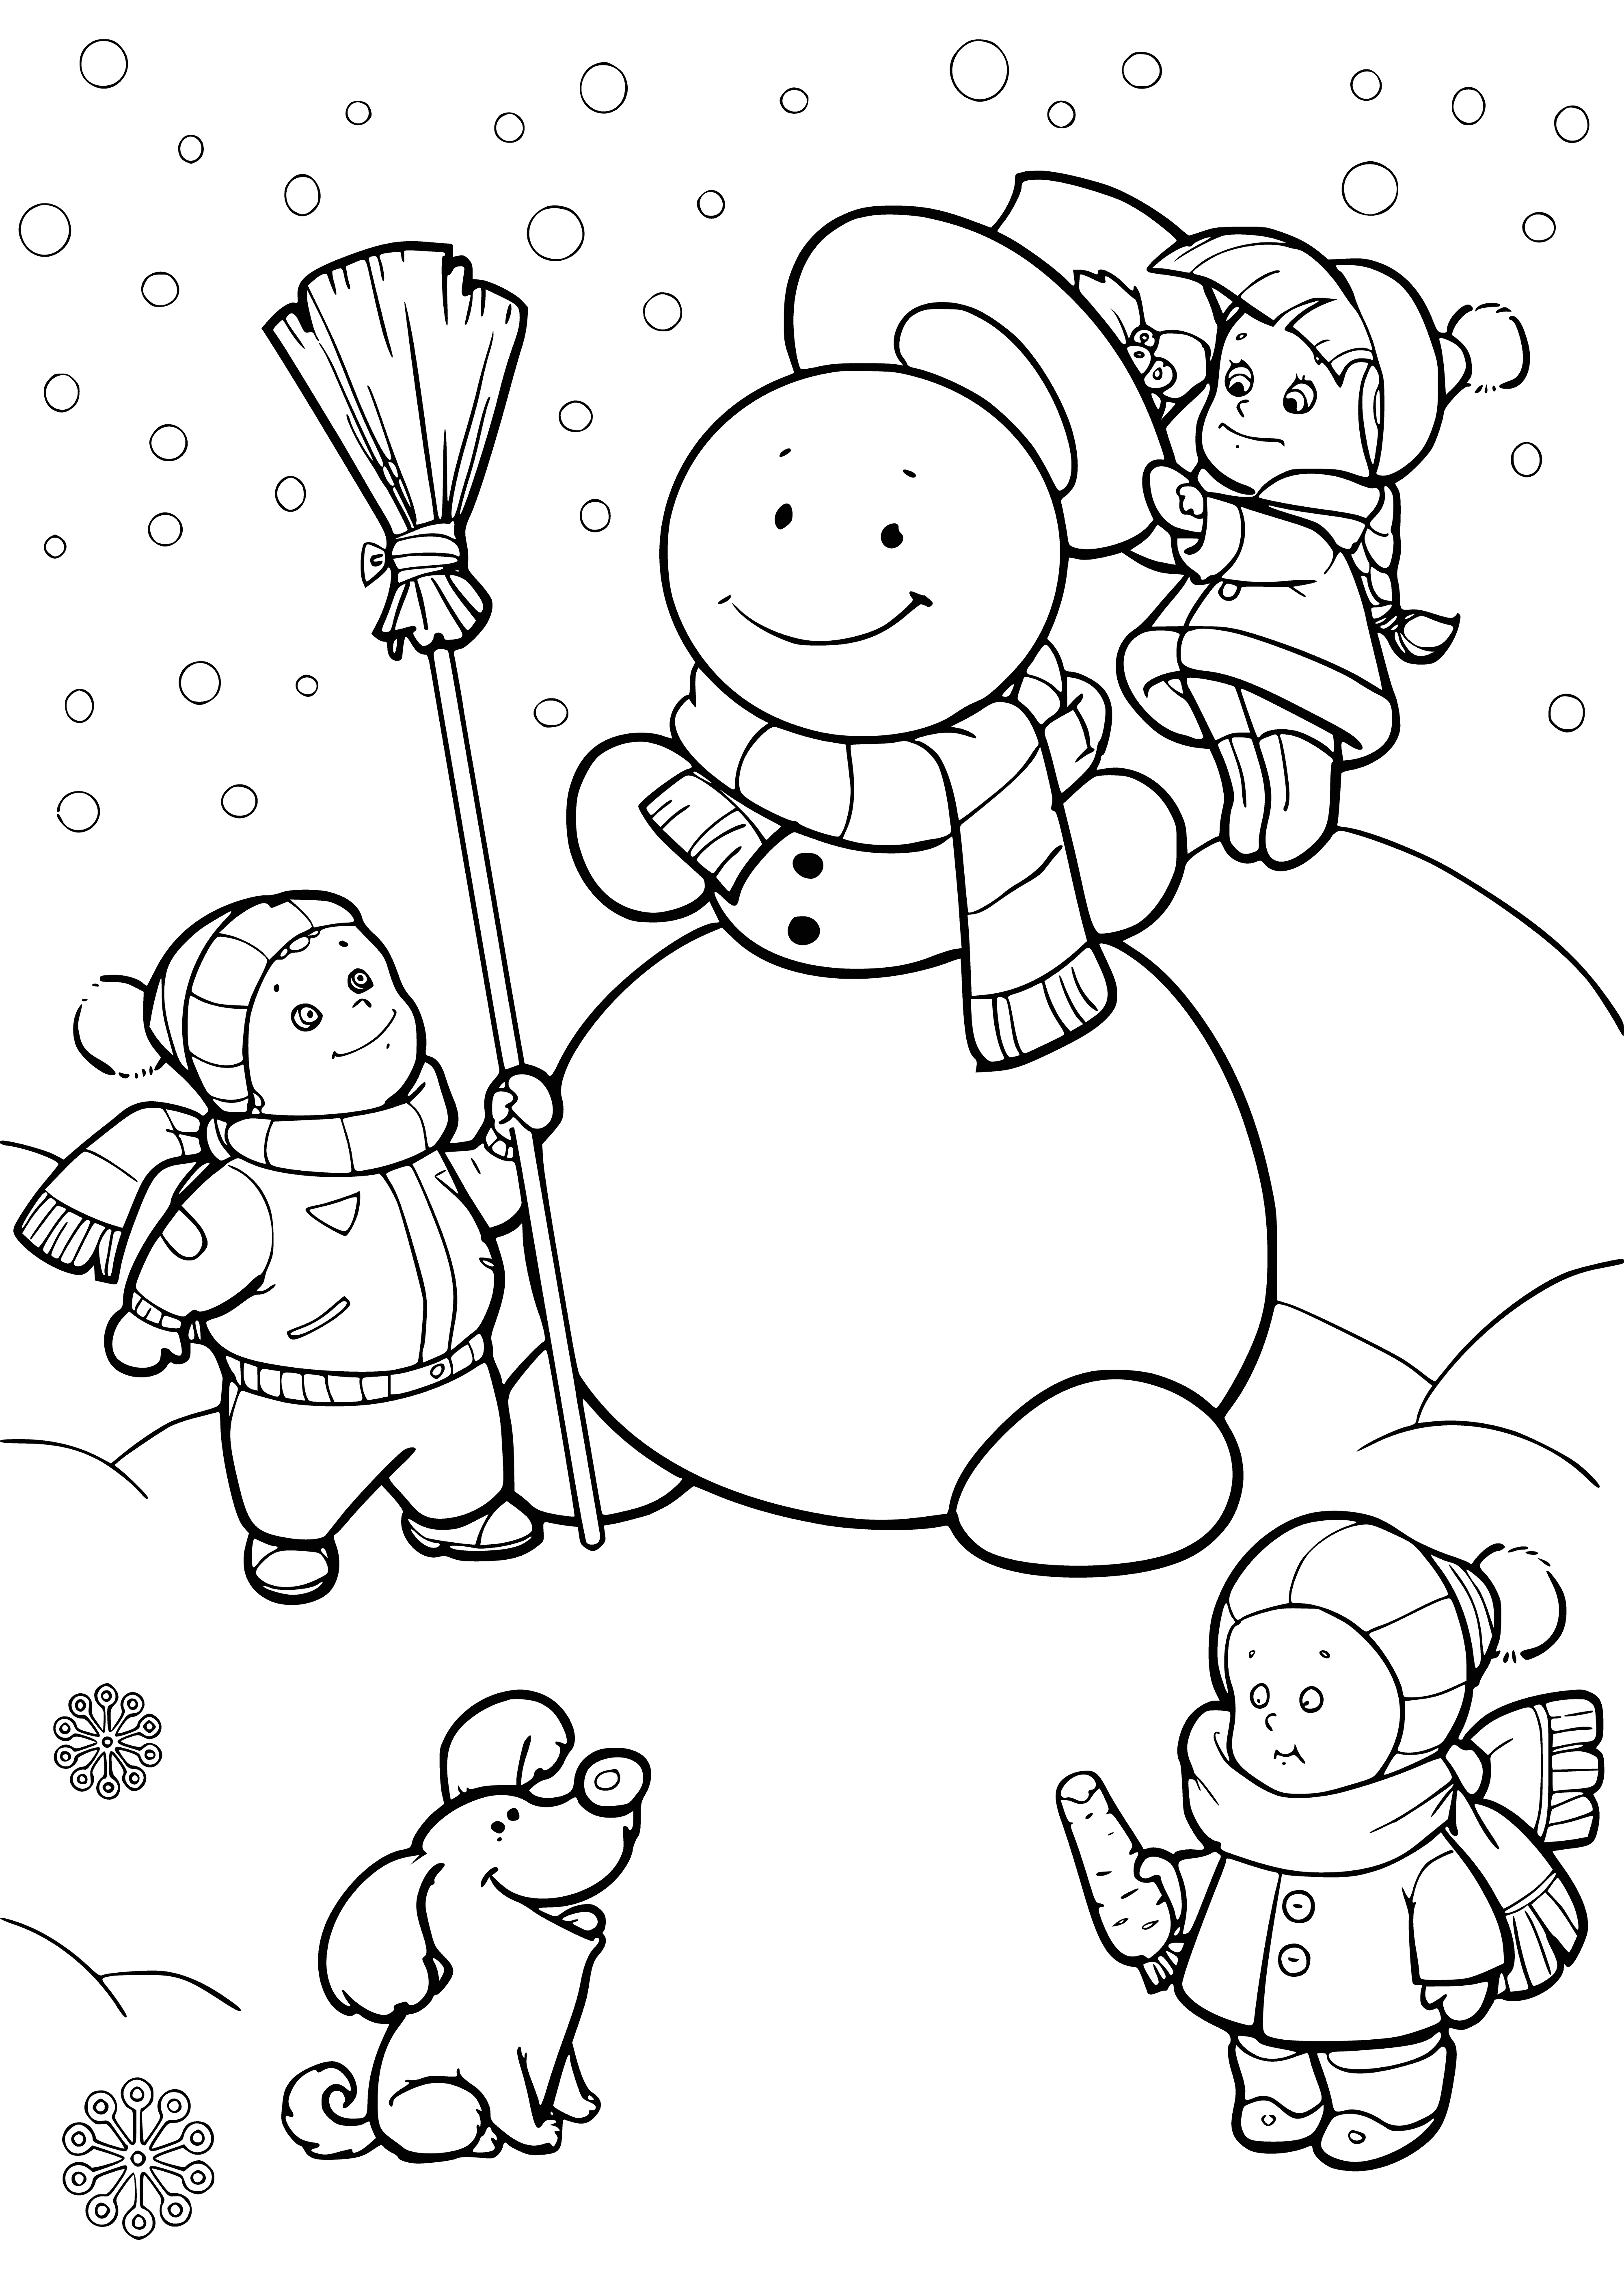 Les enfants sculptent un bonhomme de neige coloriage